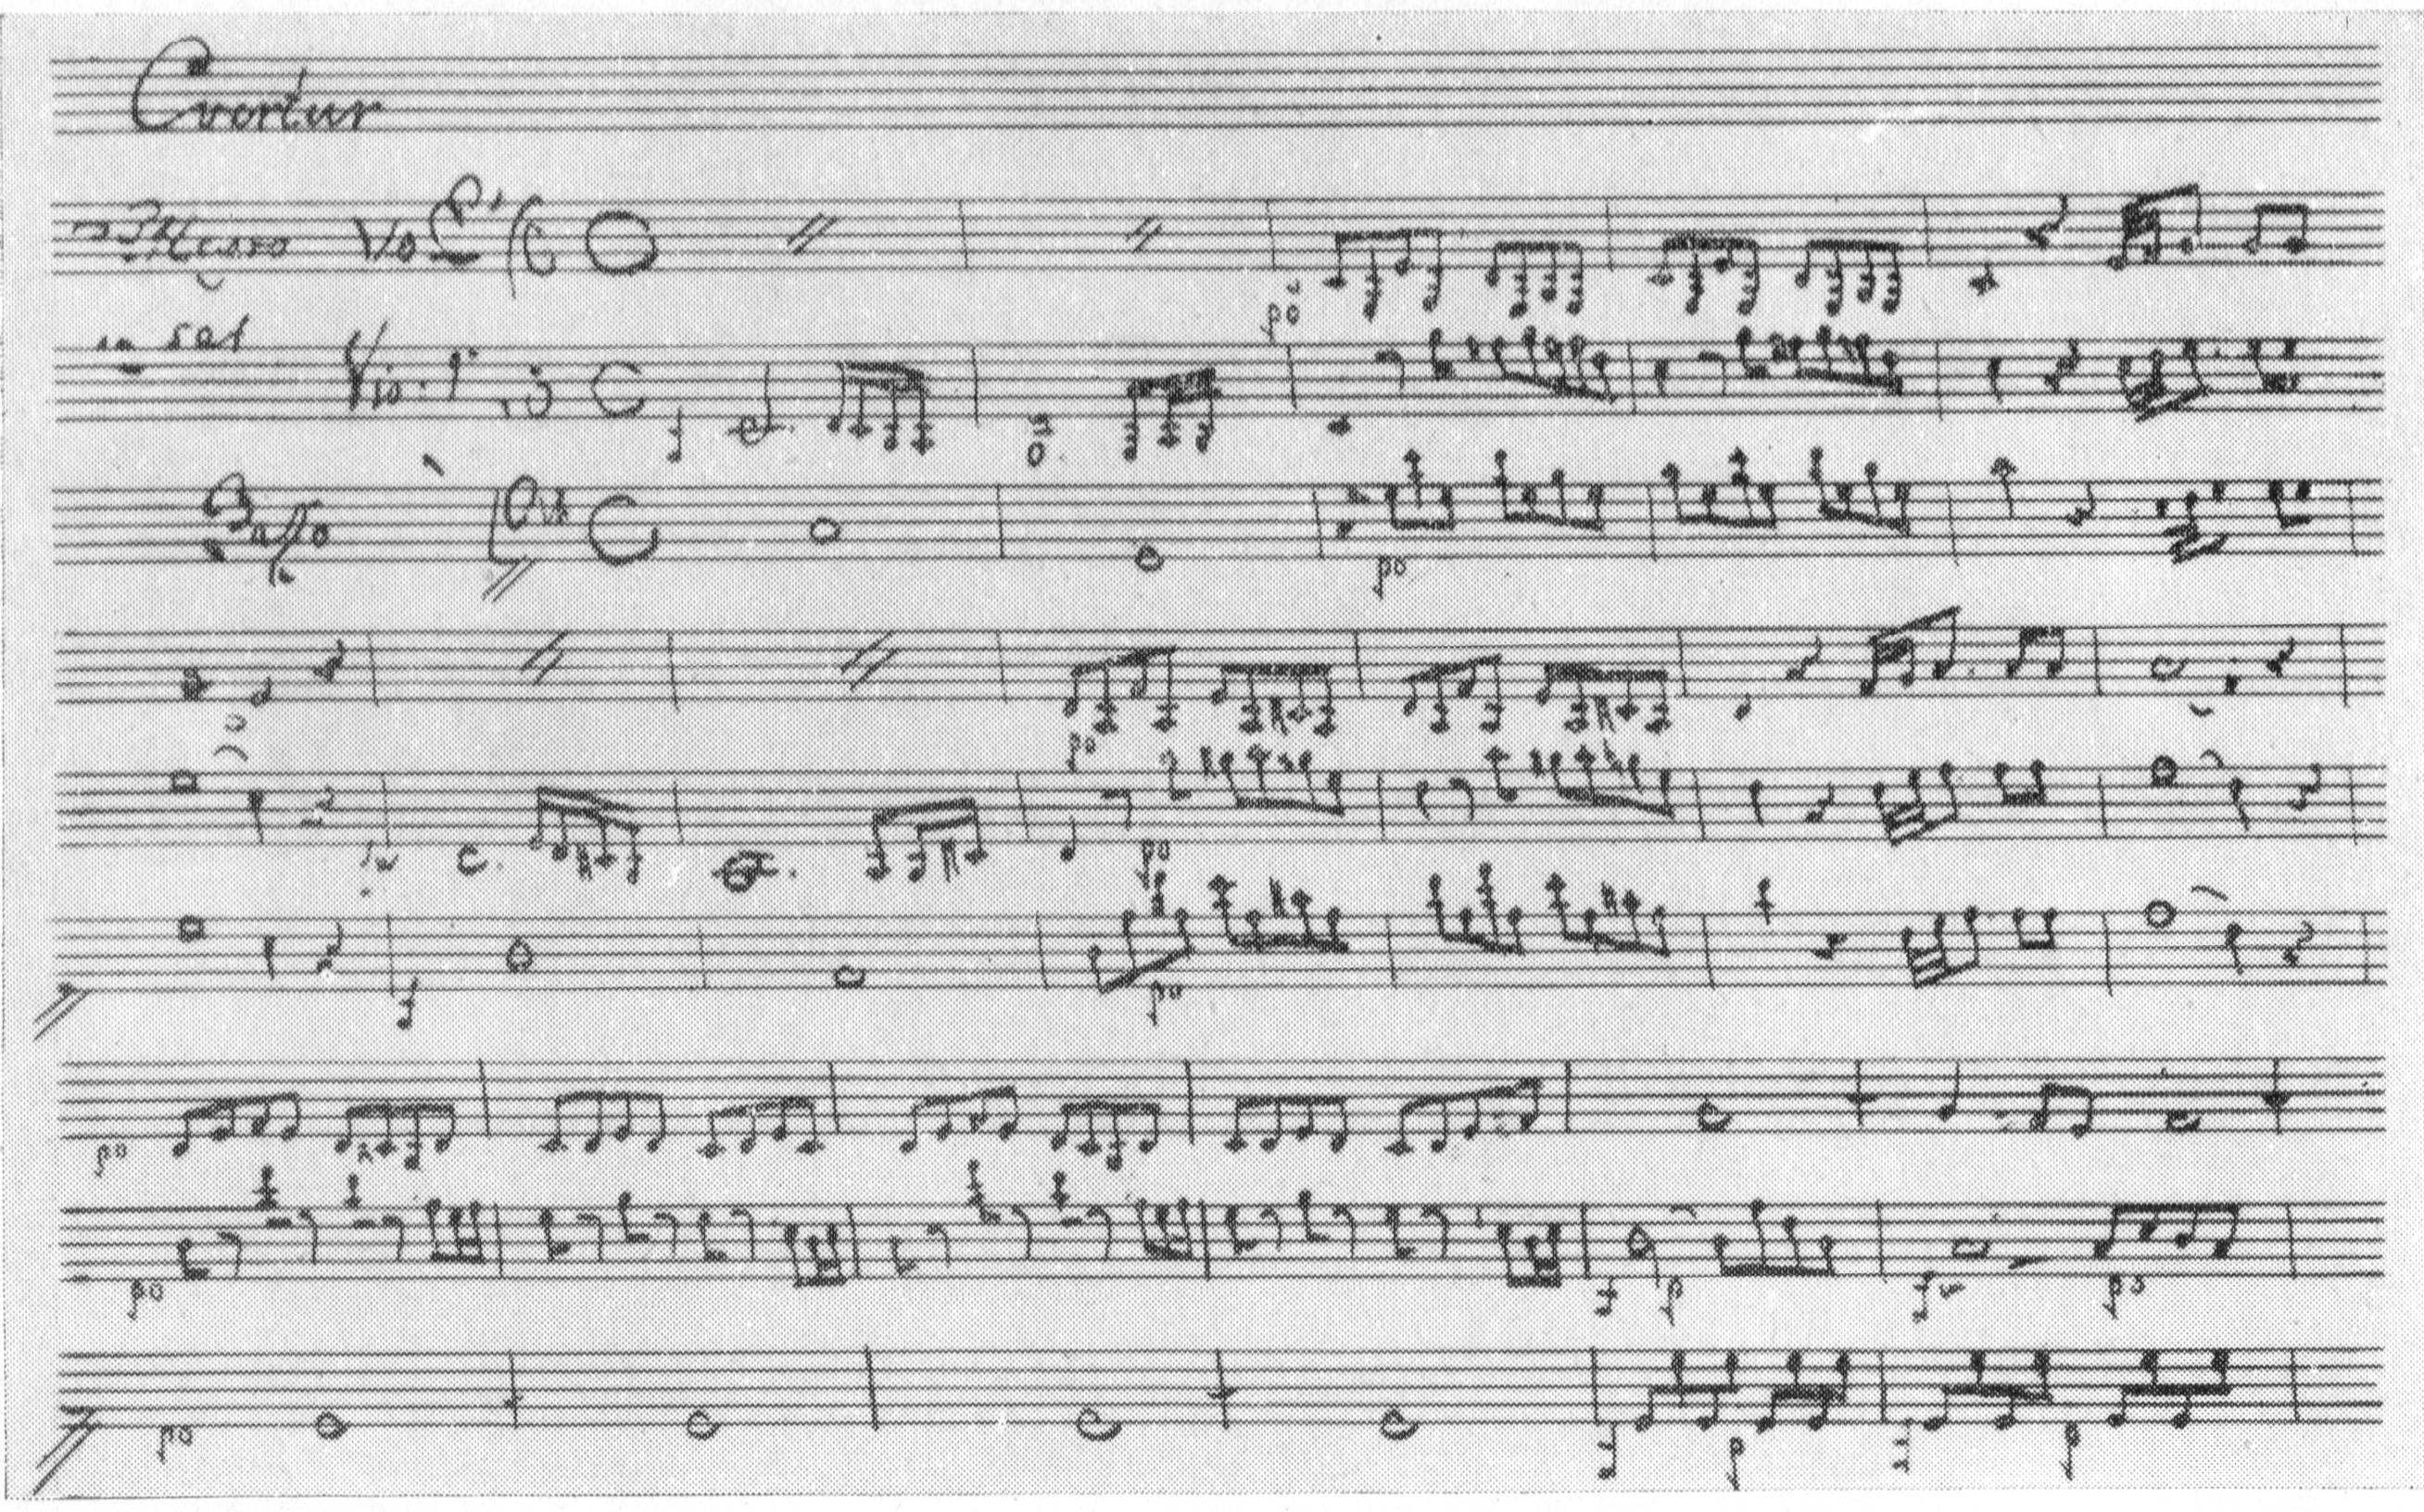 Перша сторінка партитури опери «Сокіл». Рукописна копія XVIII ст.